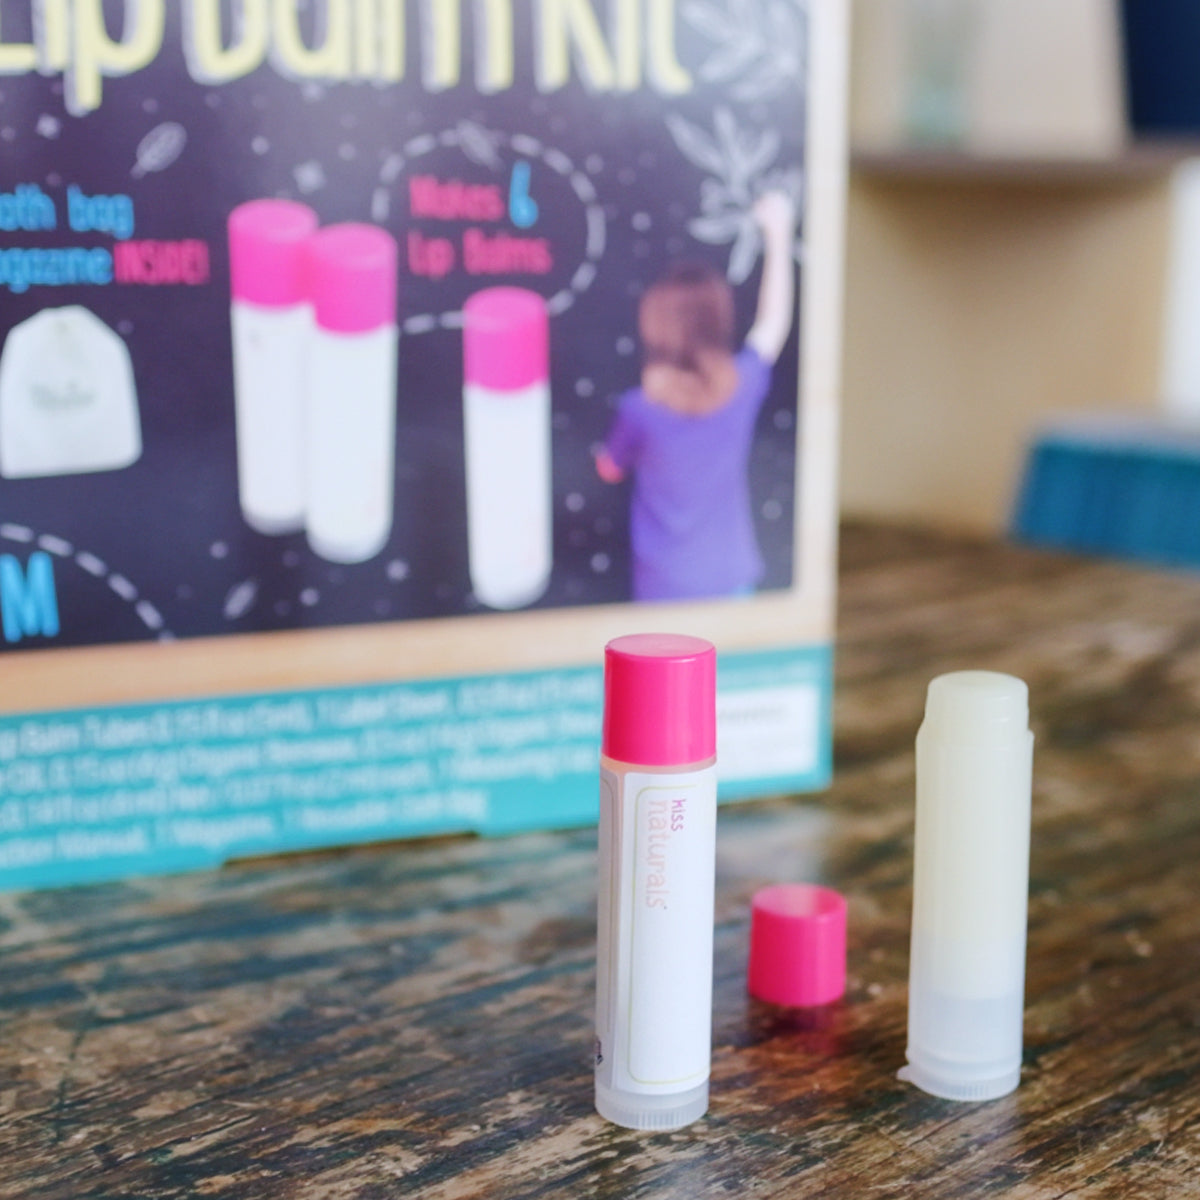 DIY Lip Balm Kit - Eco-friendly, Natural and Organic